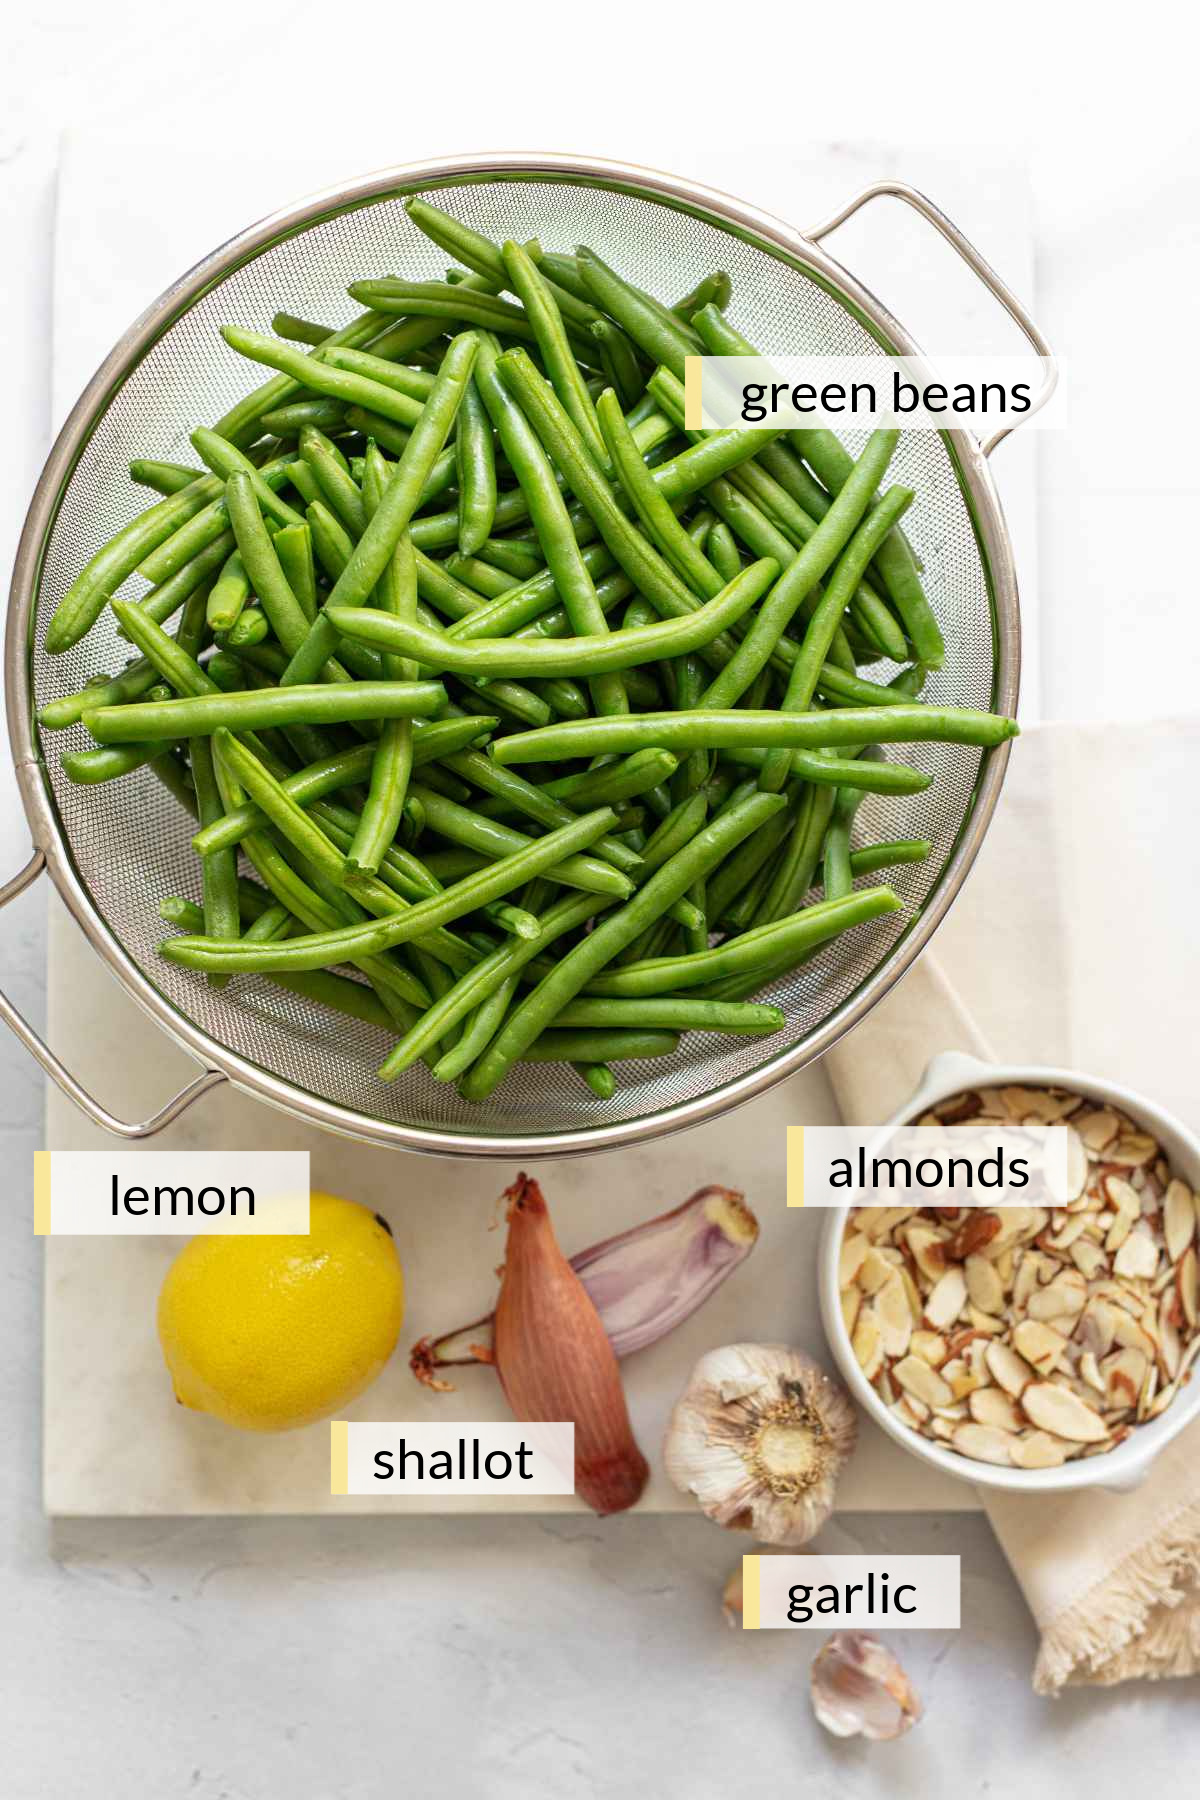 Fresh green beans, lemon, garlic cloves, shallot and sliced almonds.